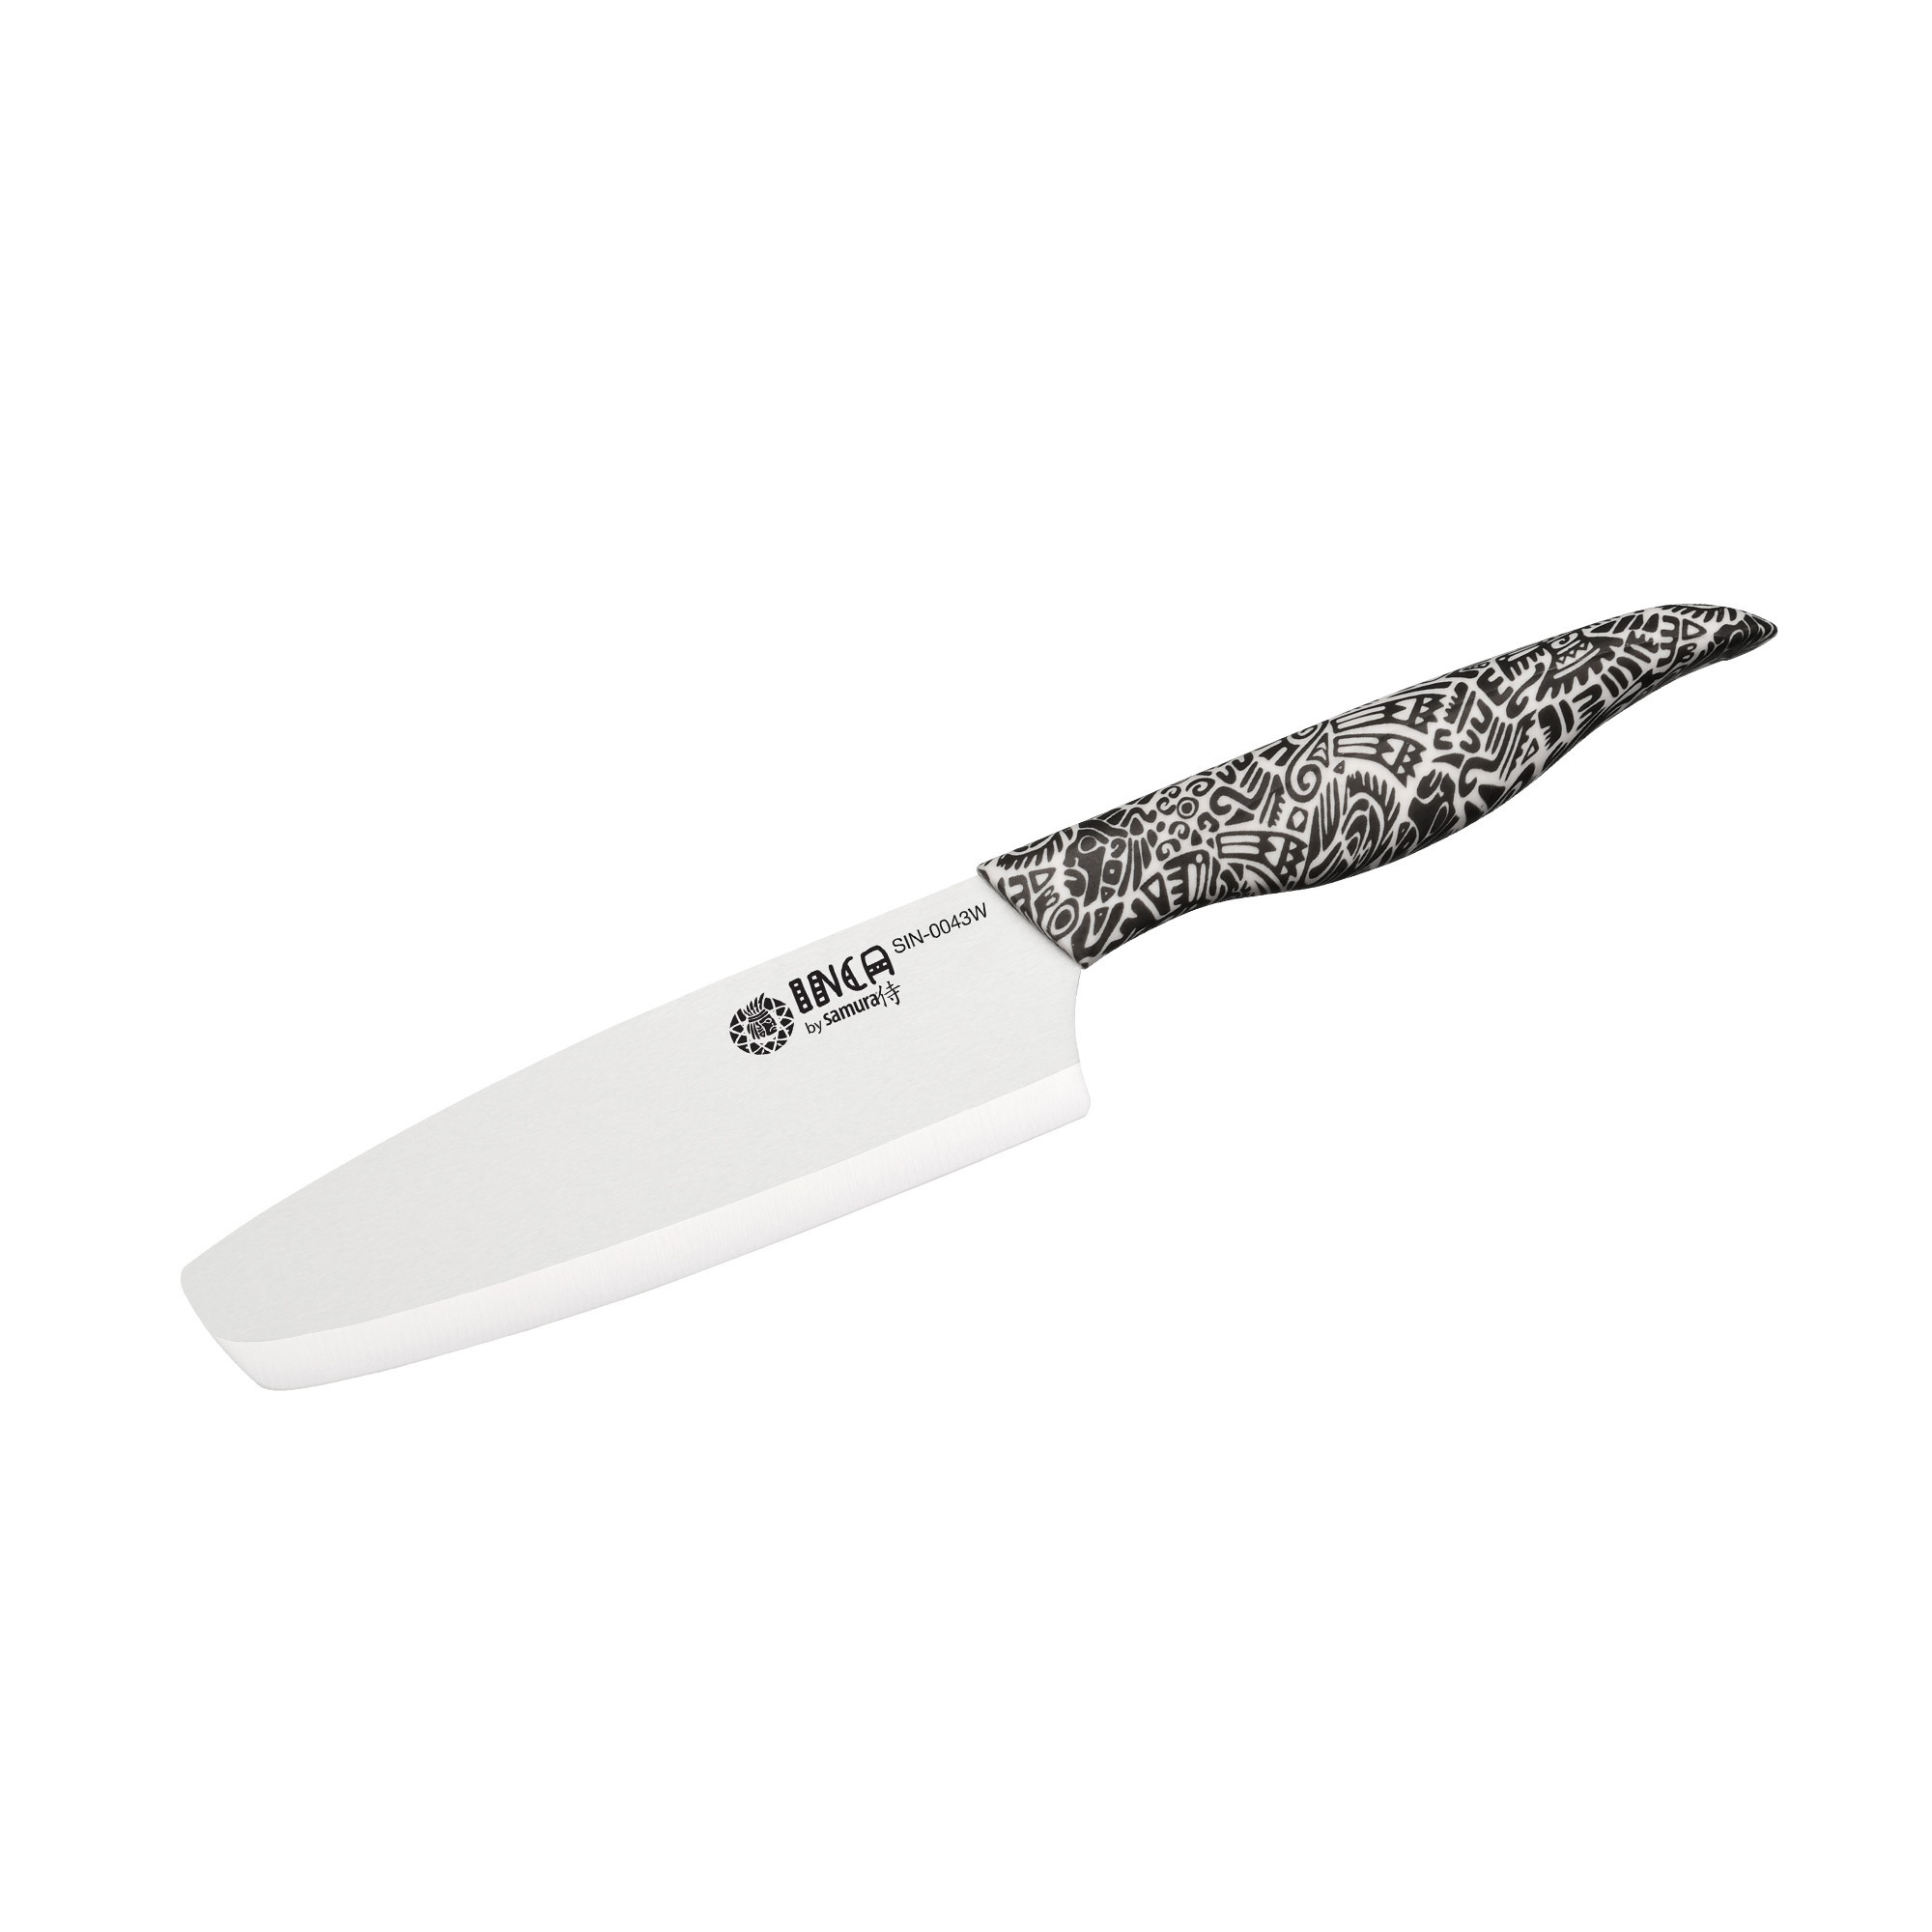 Нож кухонный накири Samura Inca 165 мм, белая циркониевая керамика, рукоять пластик